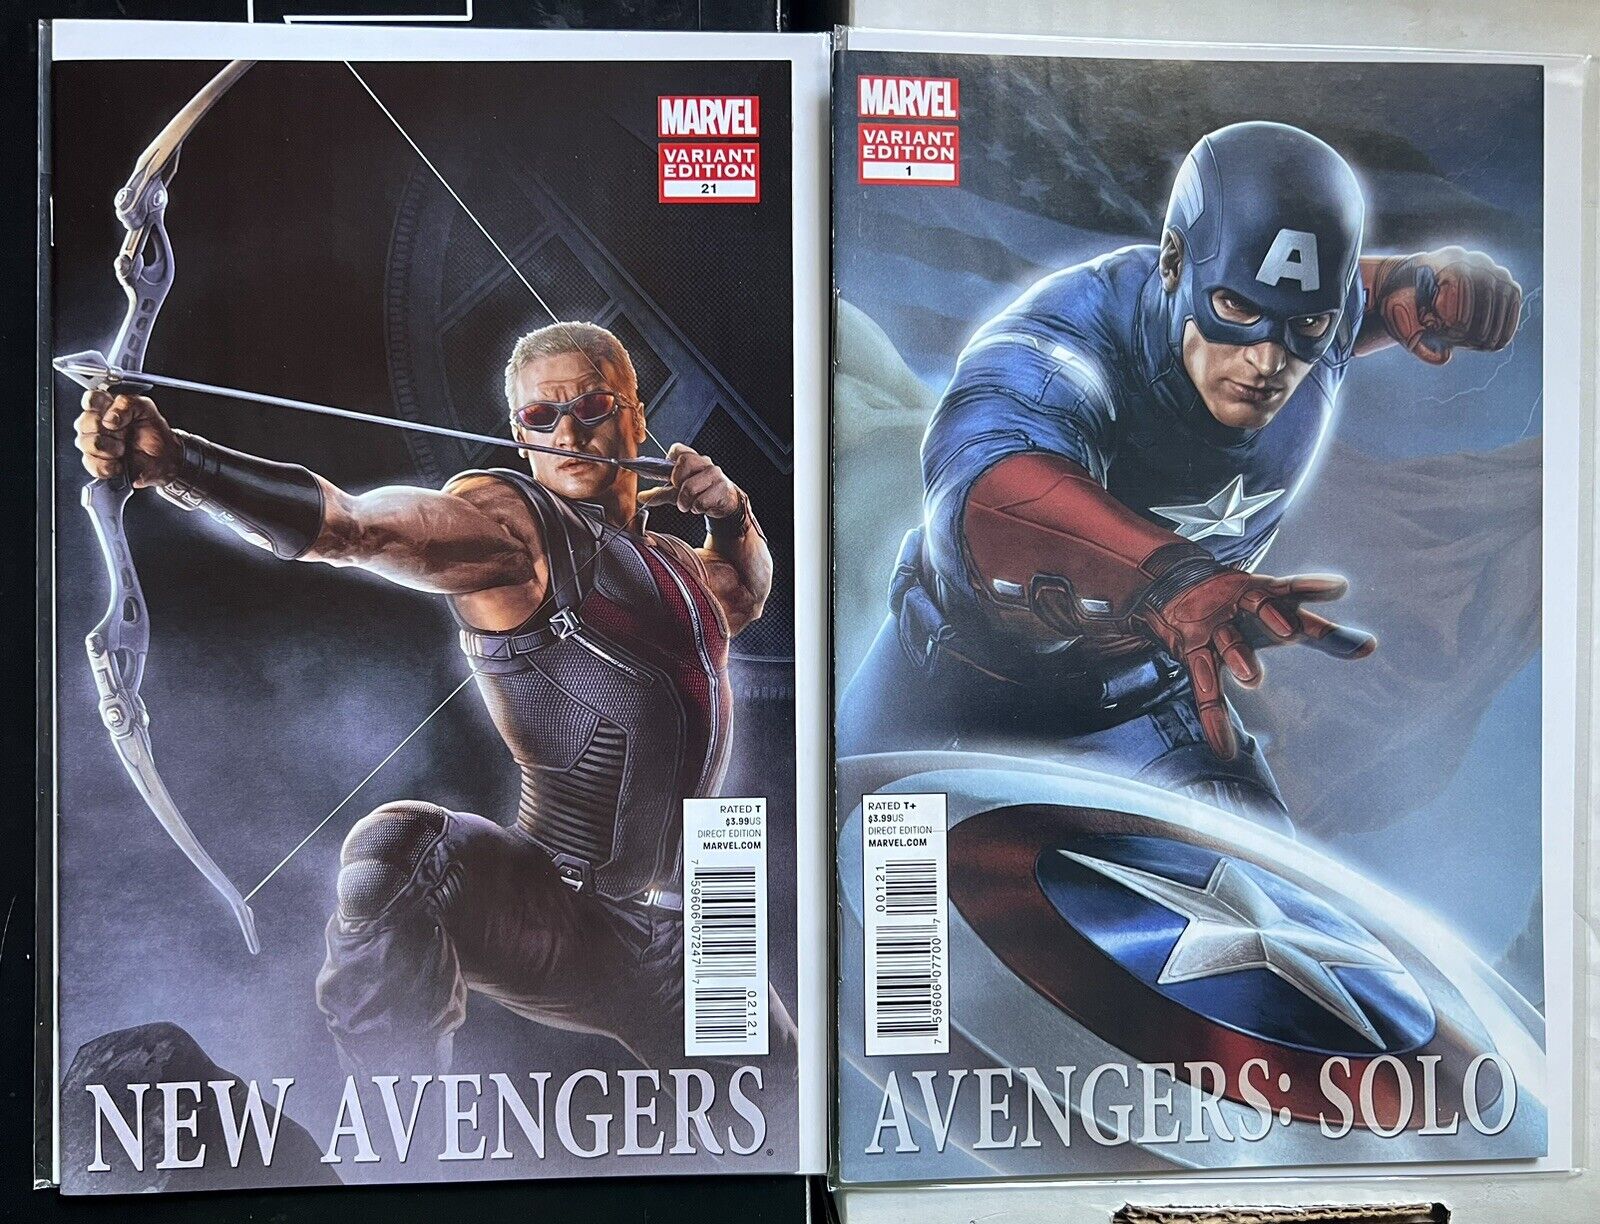 AVENGERS SOLO #1 CHRIS EVANS CAPTAIN AMERICA MOVIE VARIANT New Avengers 21